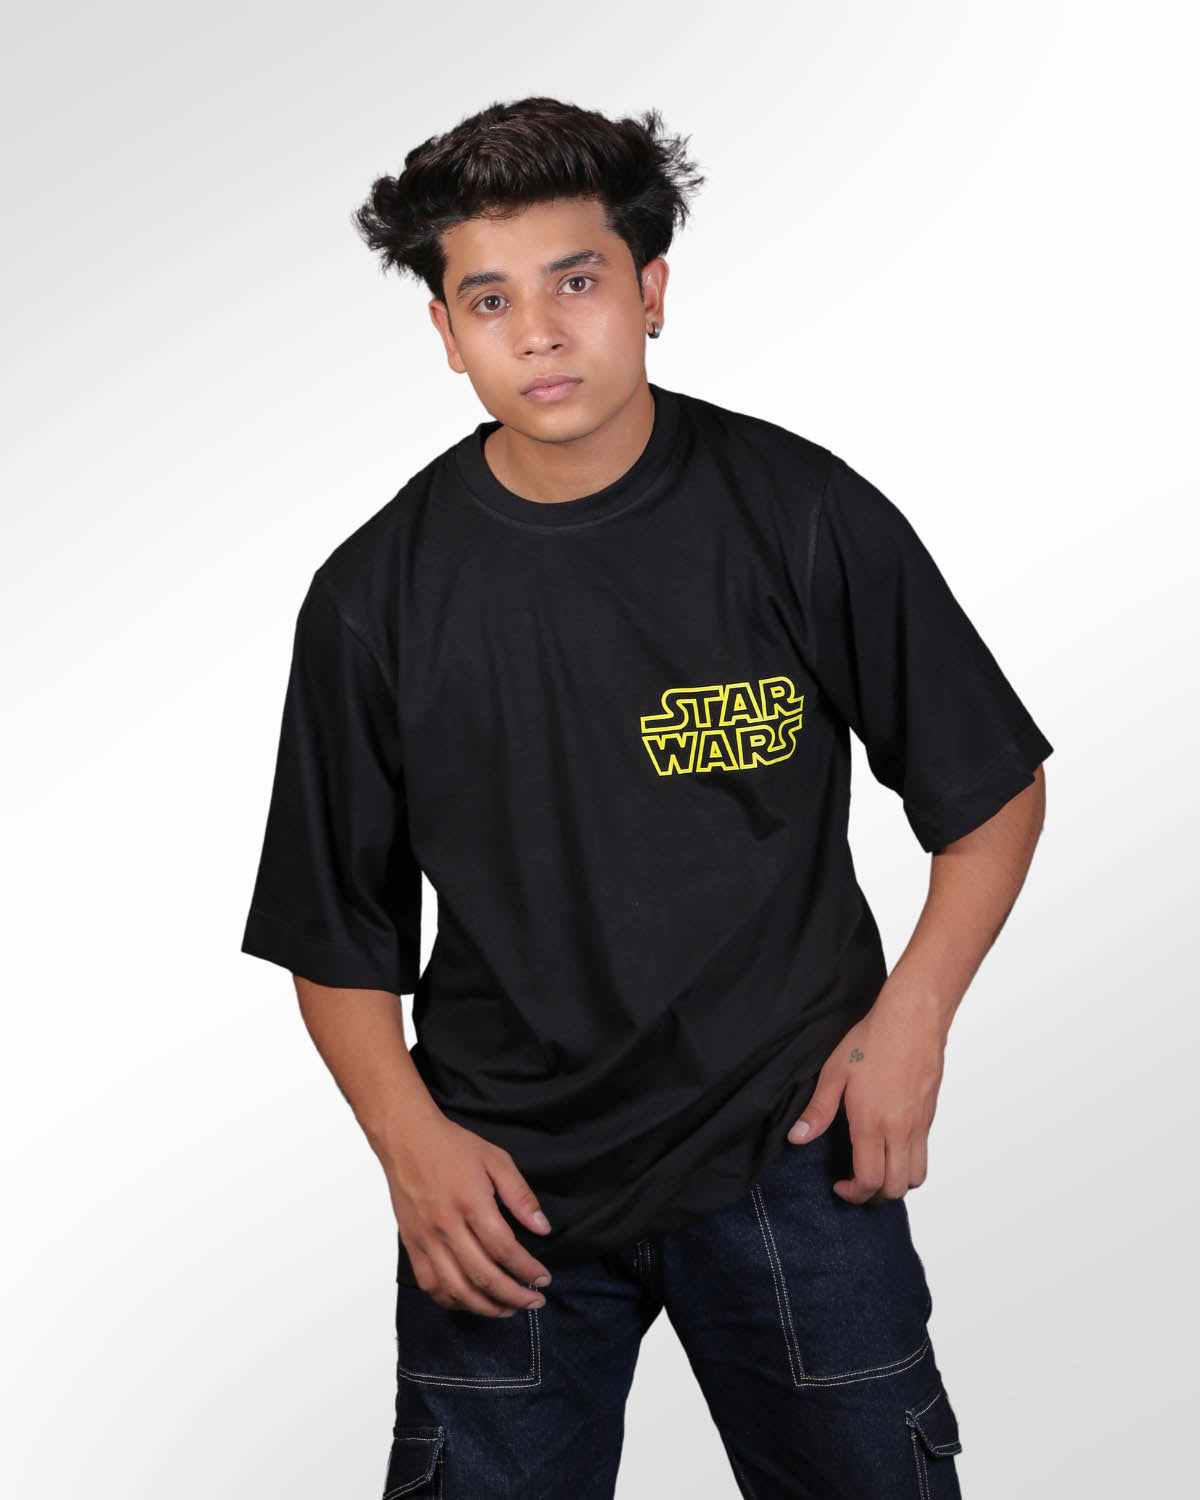 The Mandalorian Star Wars Black Oversized T-shirt for Men’s